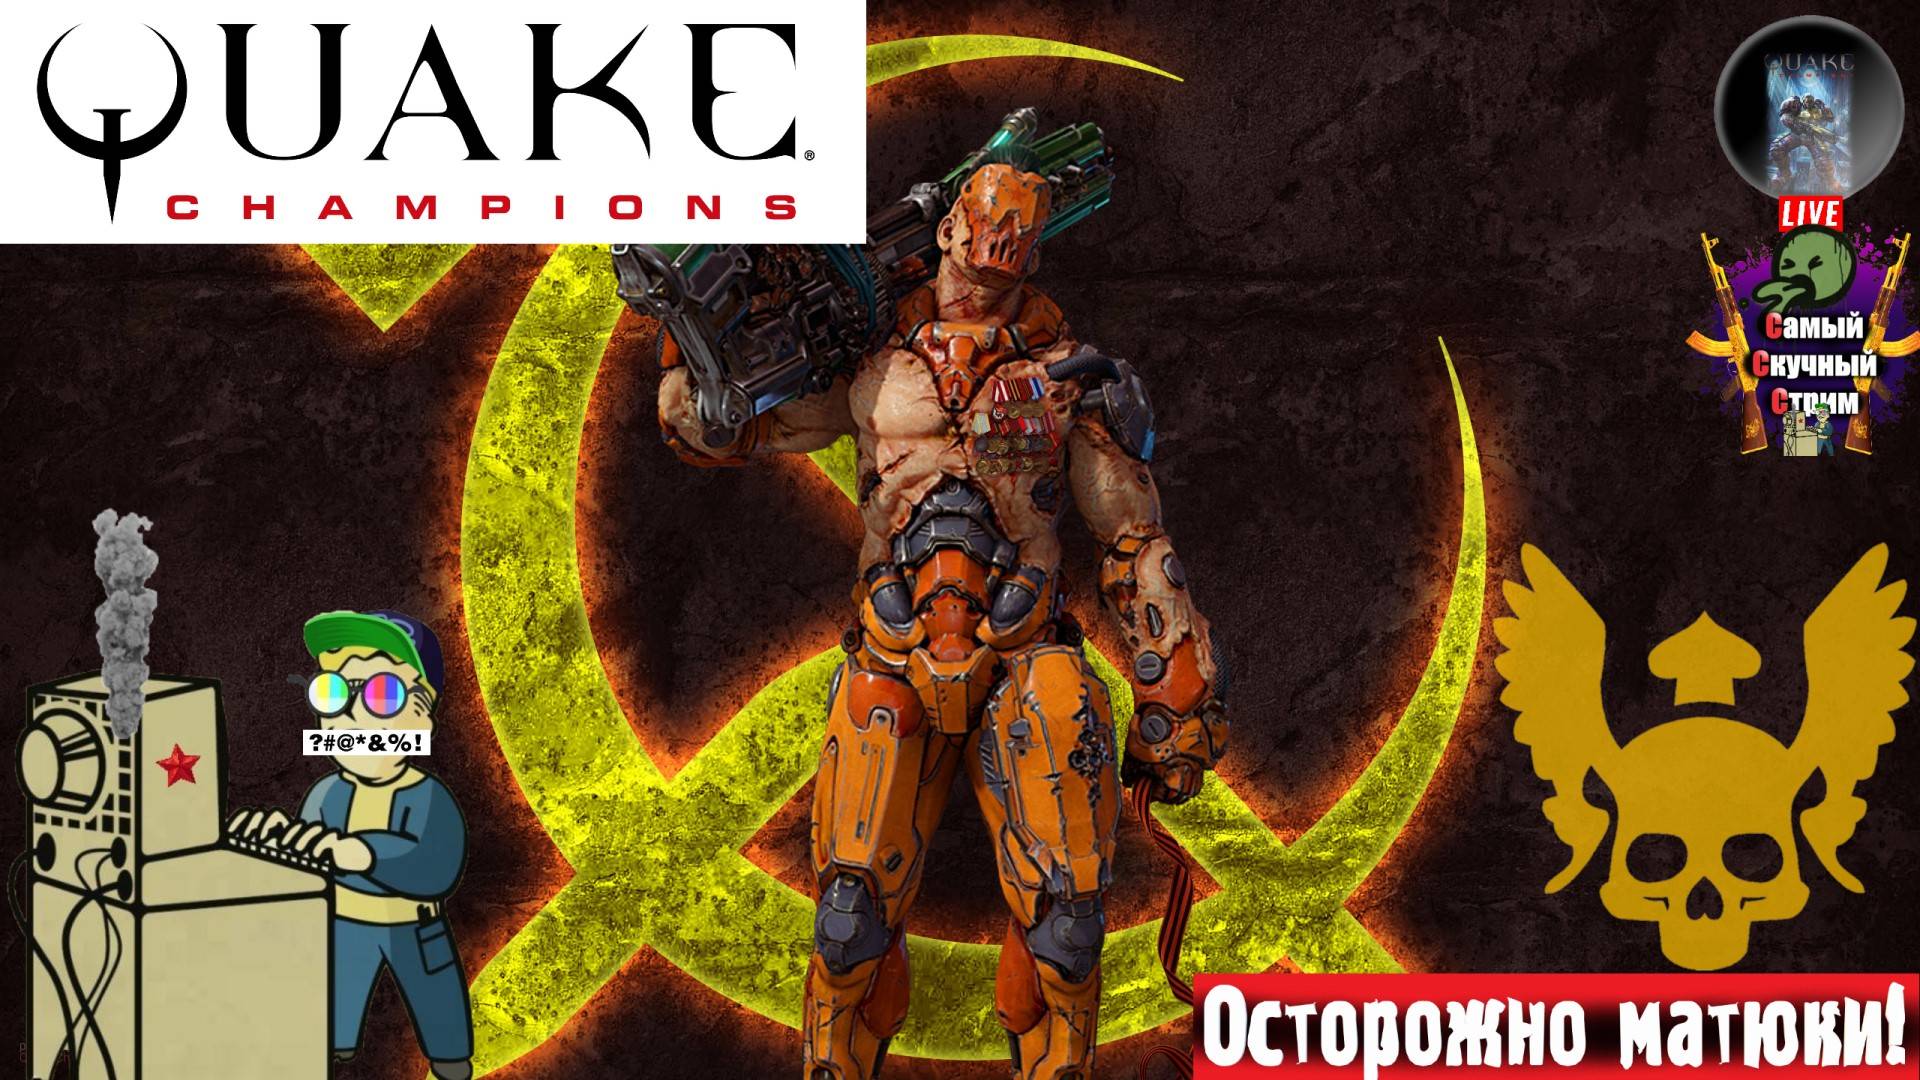 Quake Champions | Квейк Чампионс Квага | Тебе не скрыться  #quake